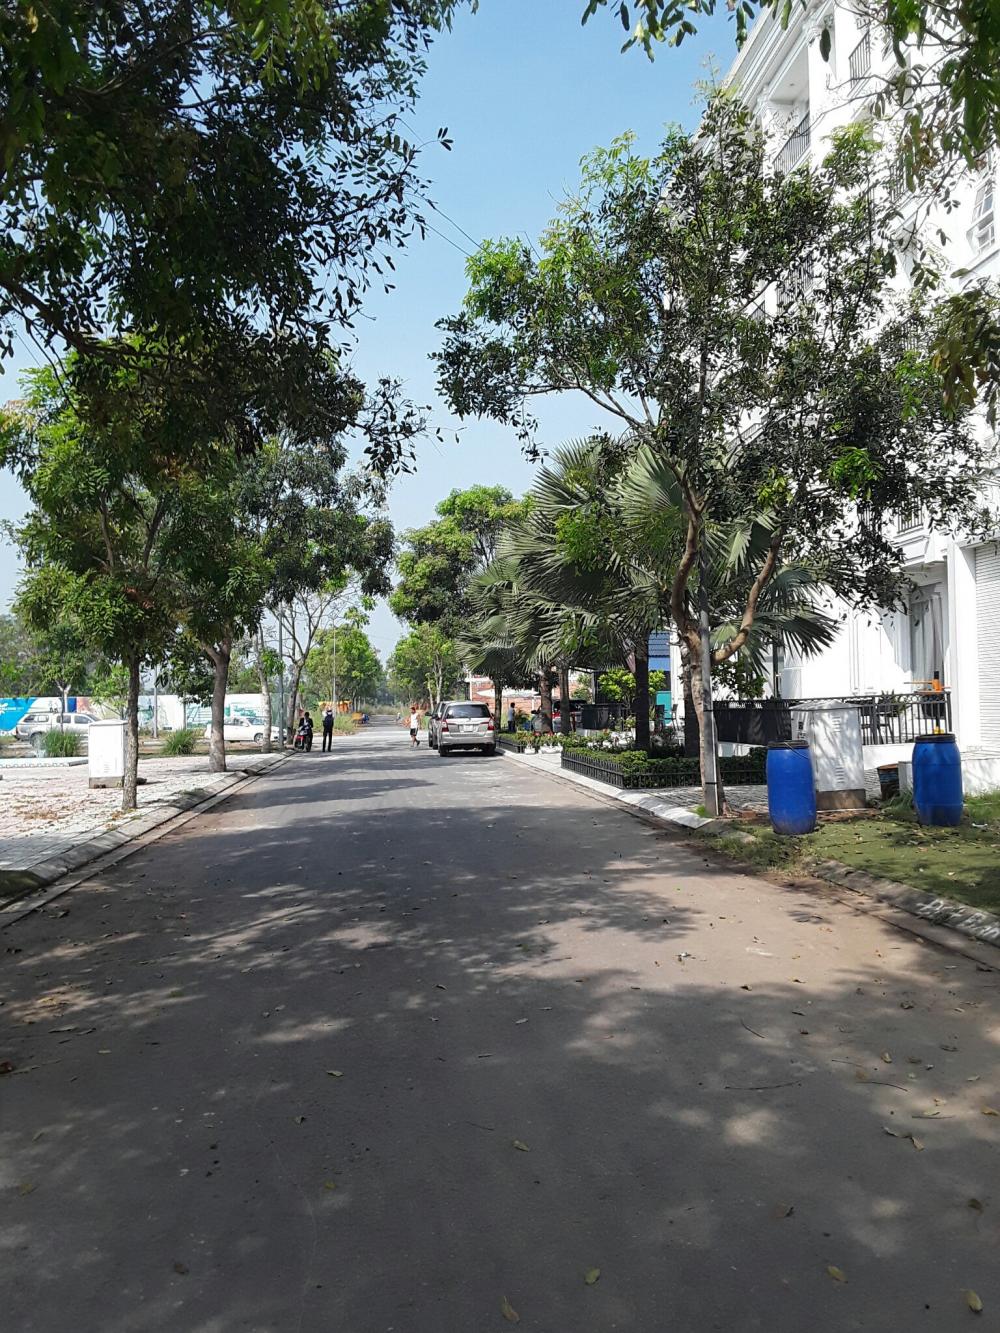 Bán nhà đất tại đường 1A, xã An Phú Tây, Bình Chánh, Tp.HCM, diện tích 100m2, giá 798 triệu